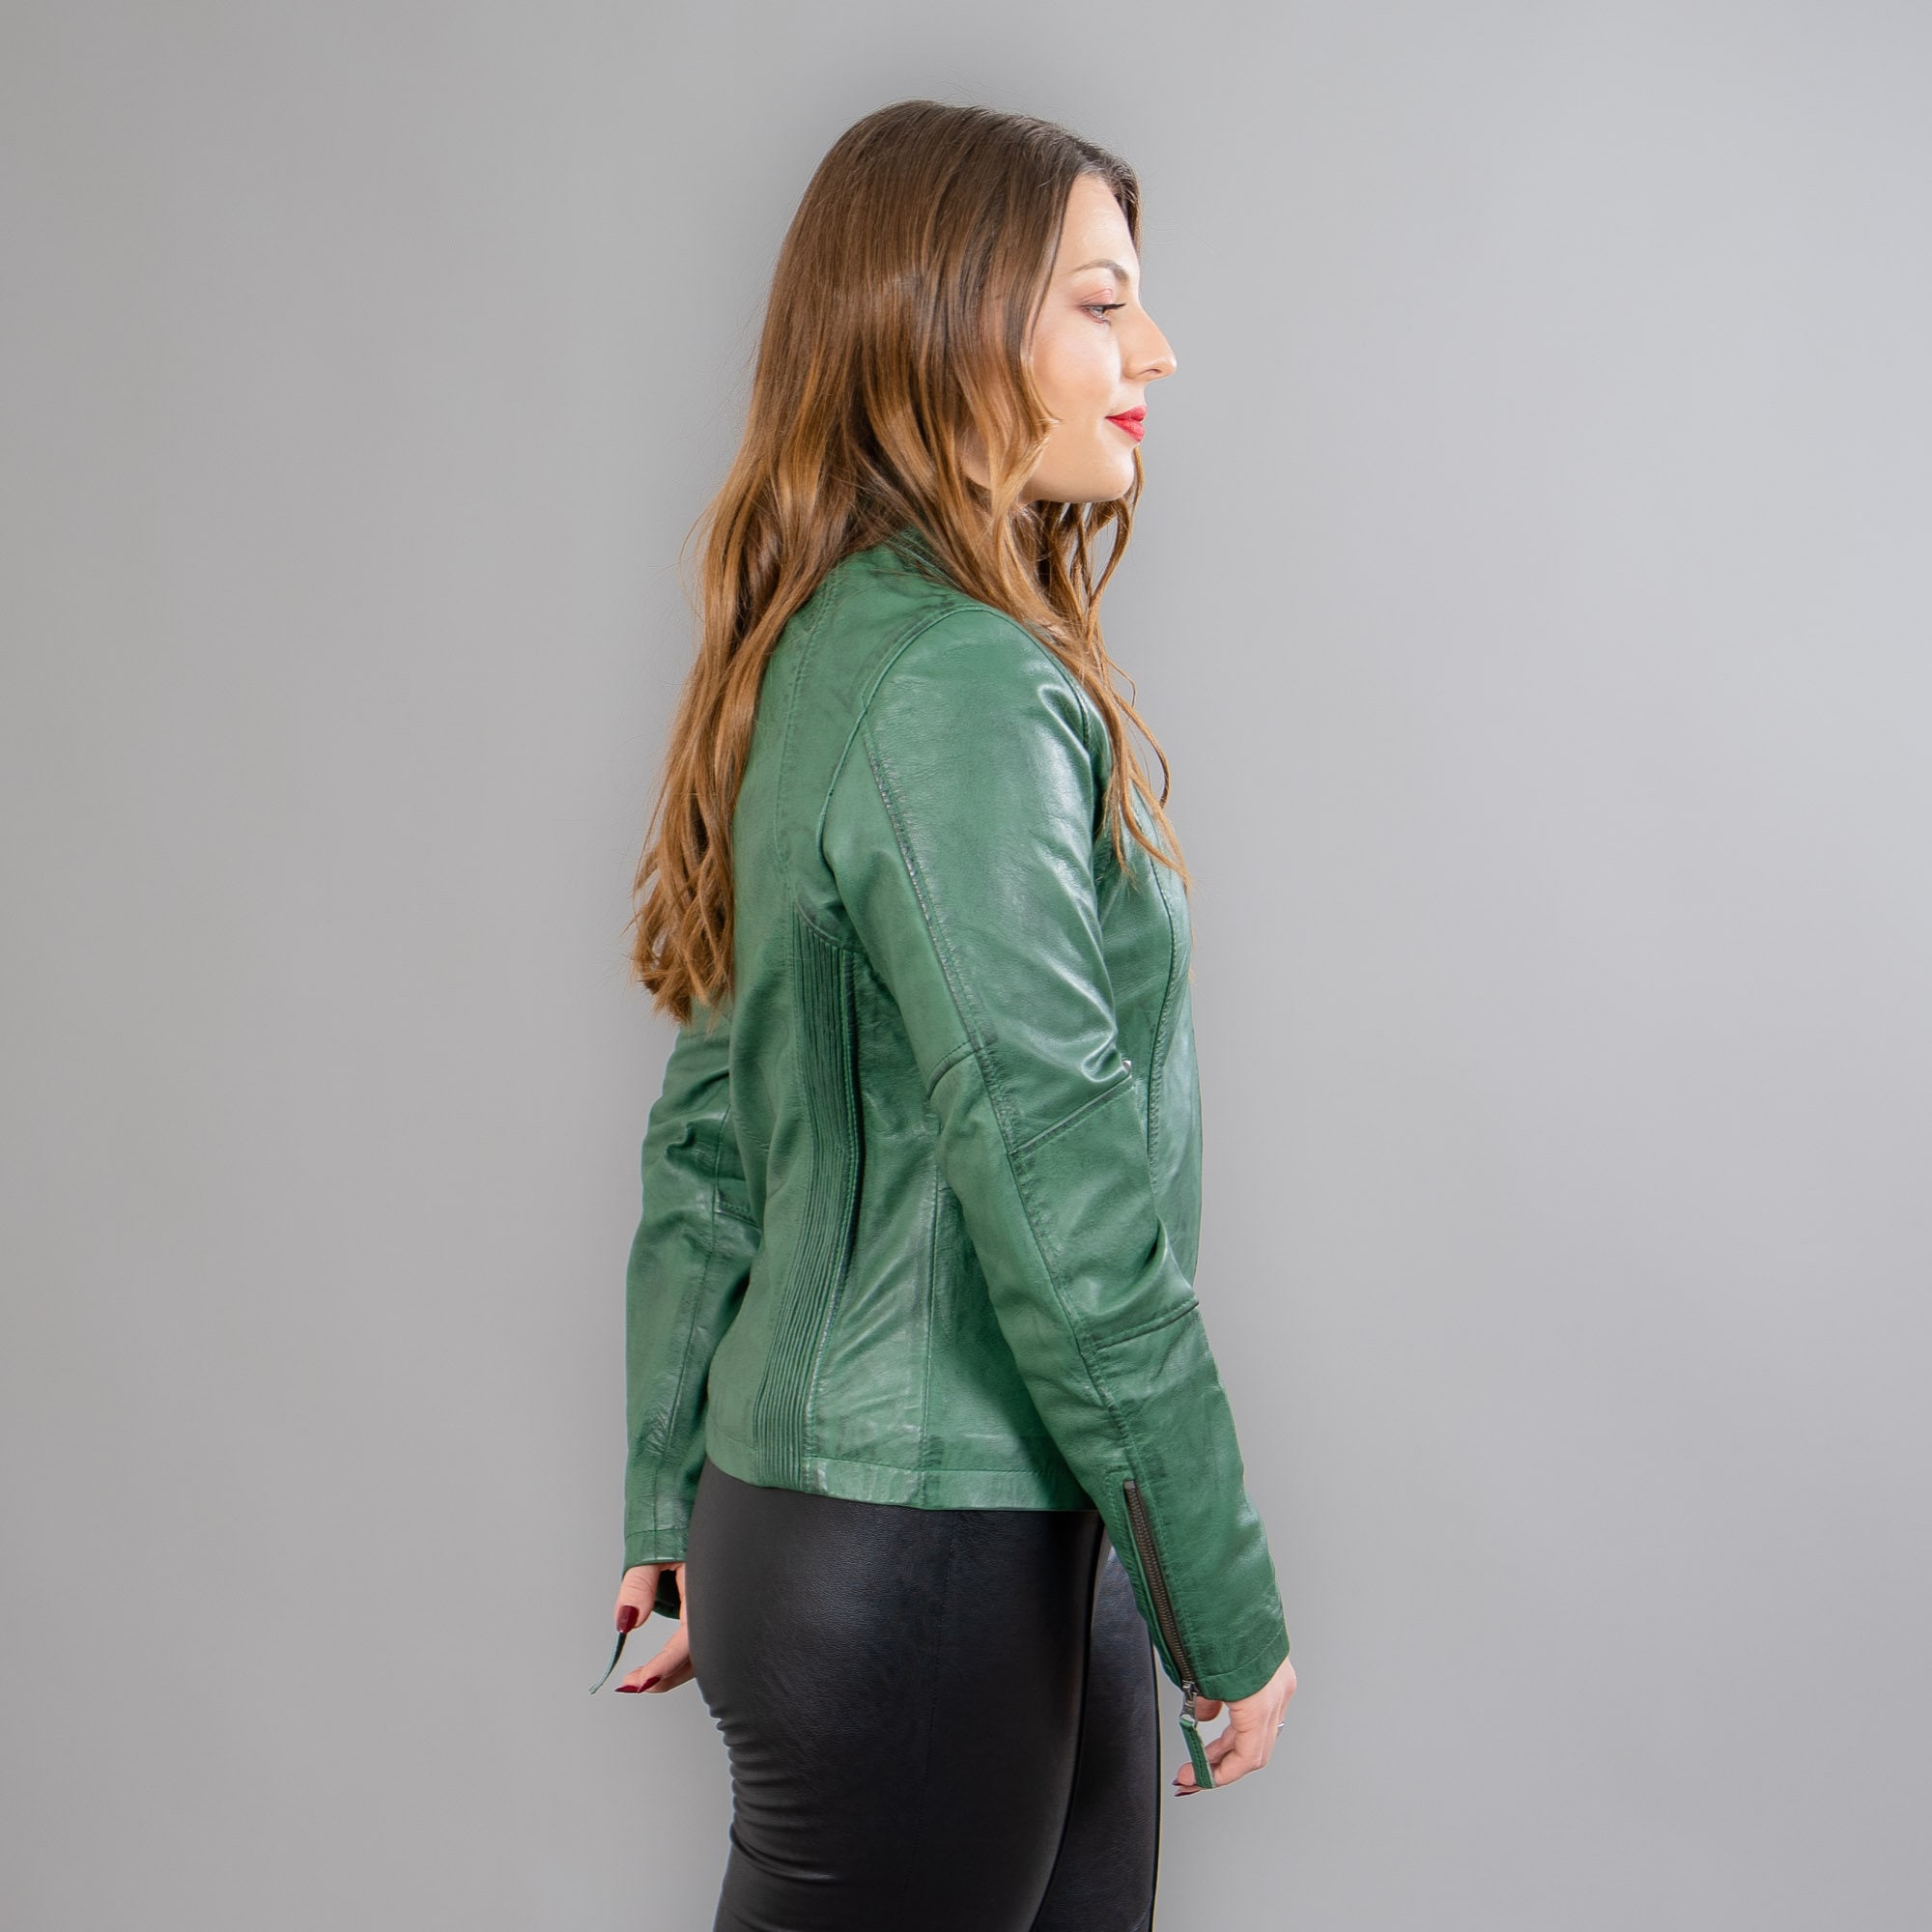 Green Leather Jacket - Etsy